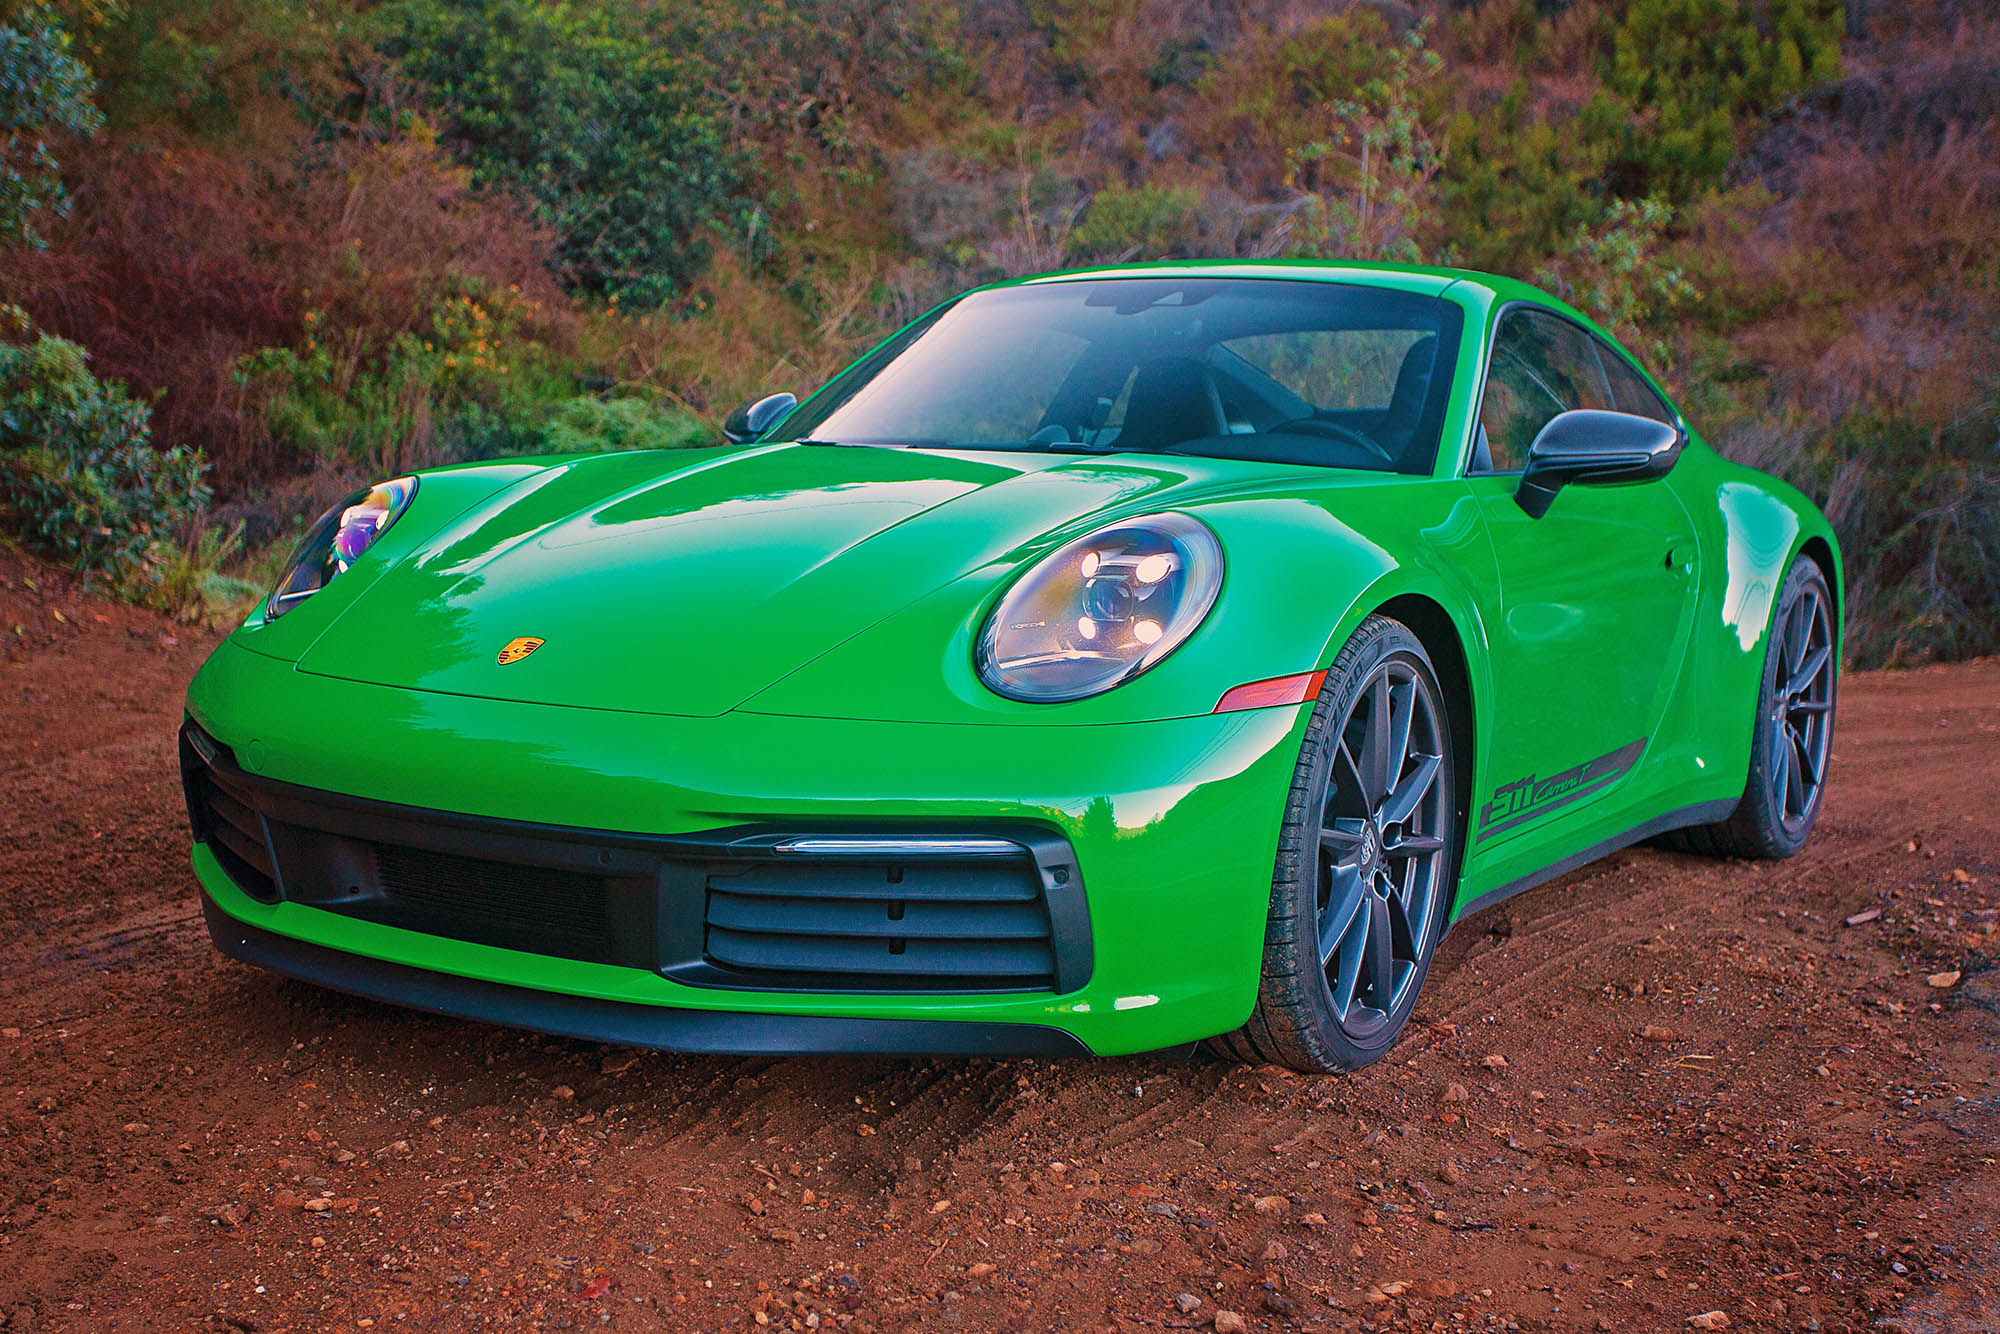 2023 Porsche 911 Carrera T in Python Green parked on dirt.